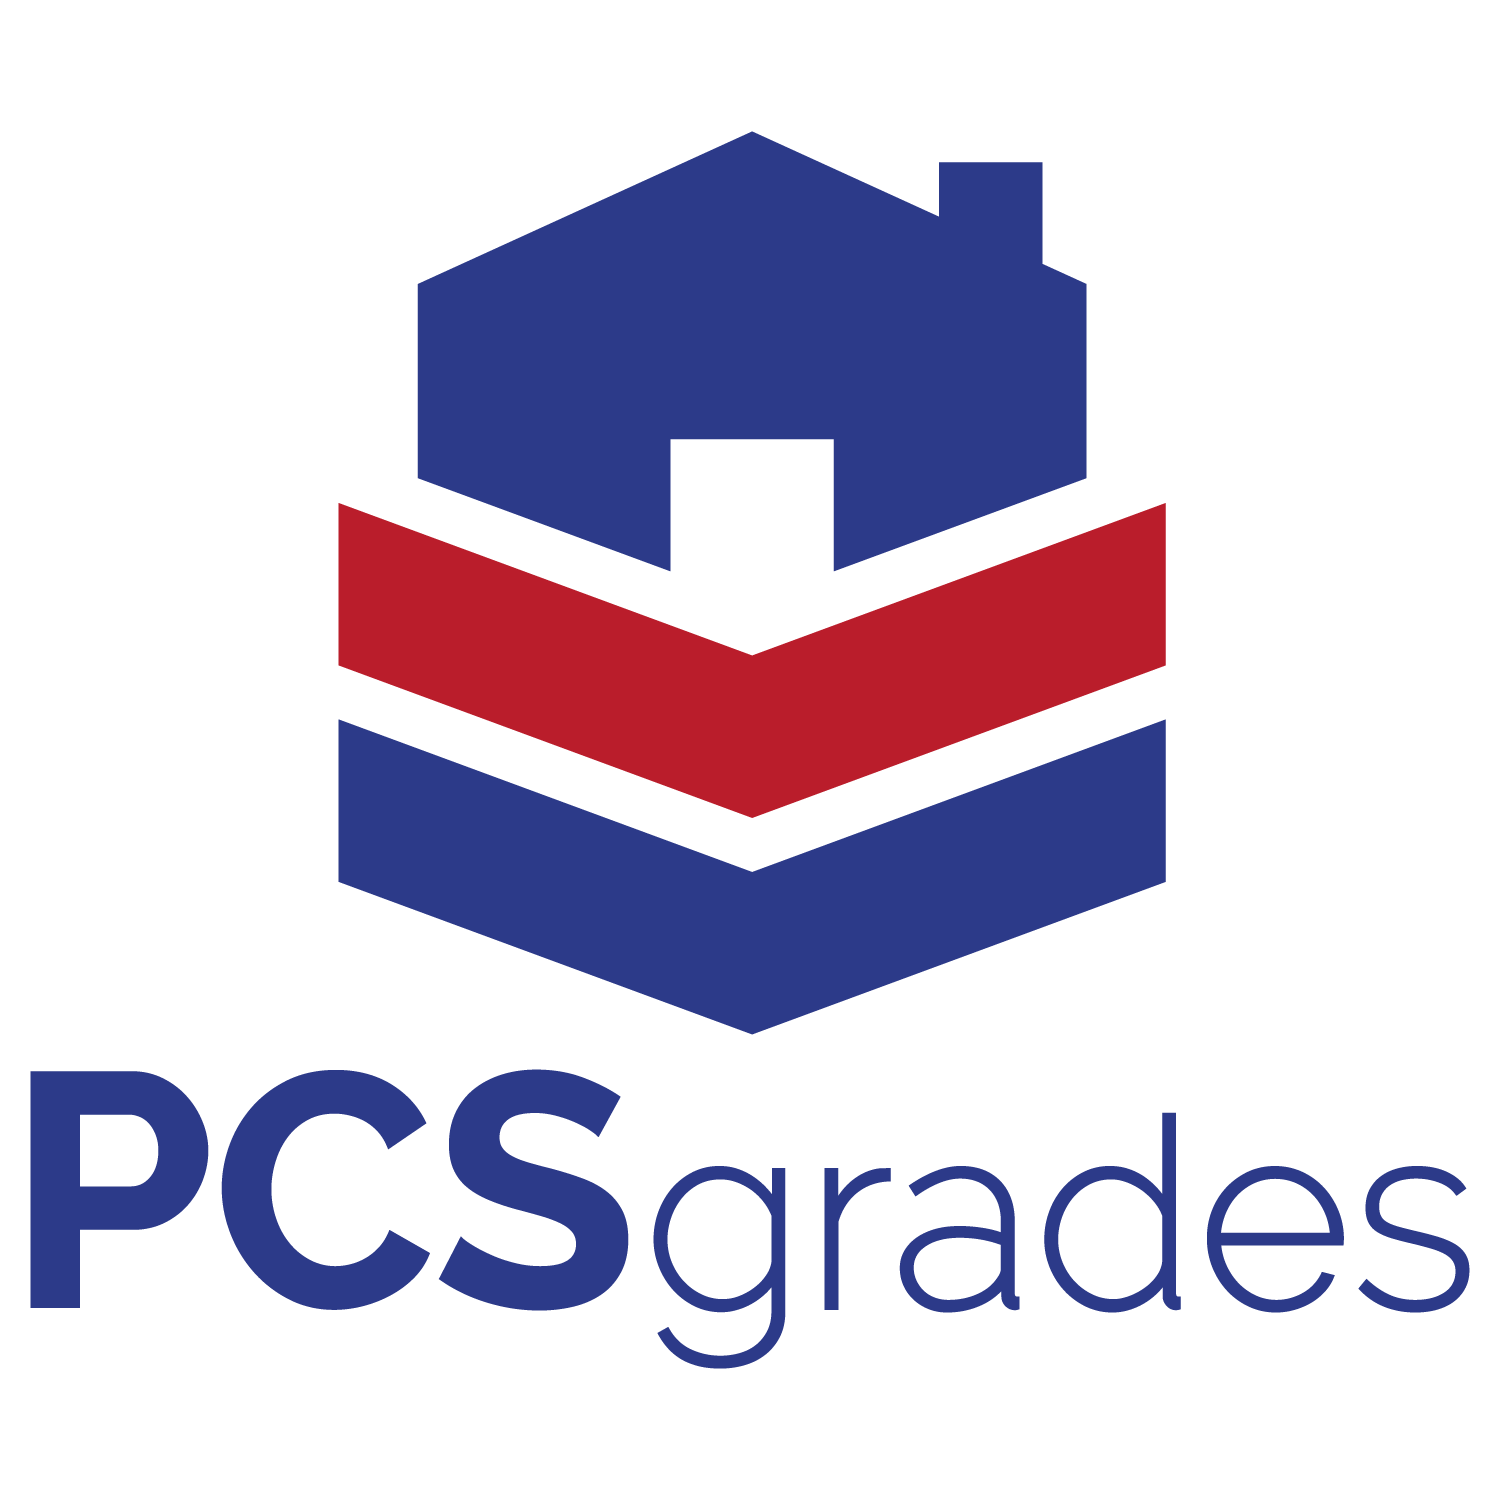 PCSgrades